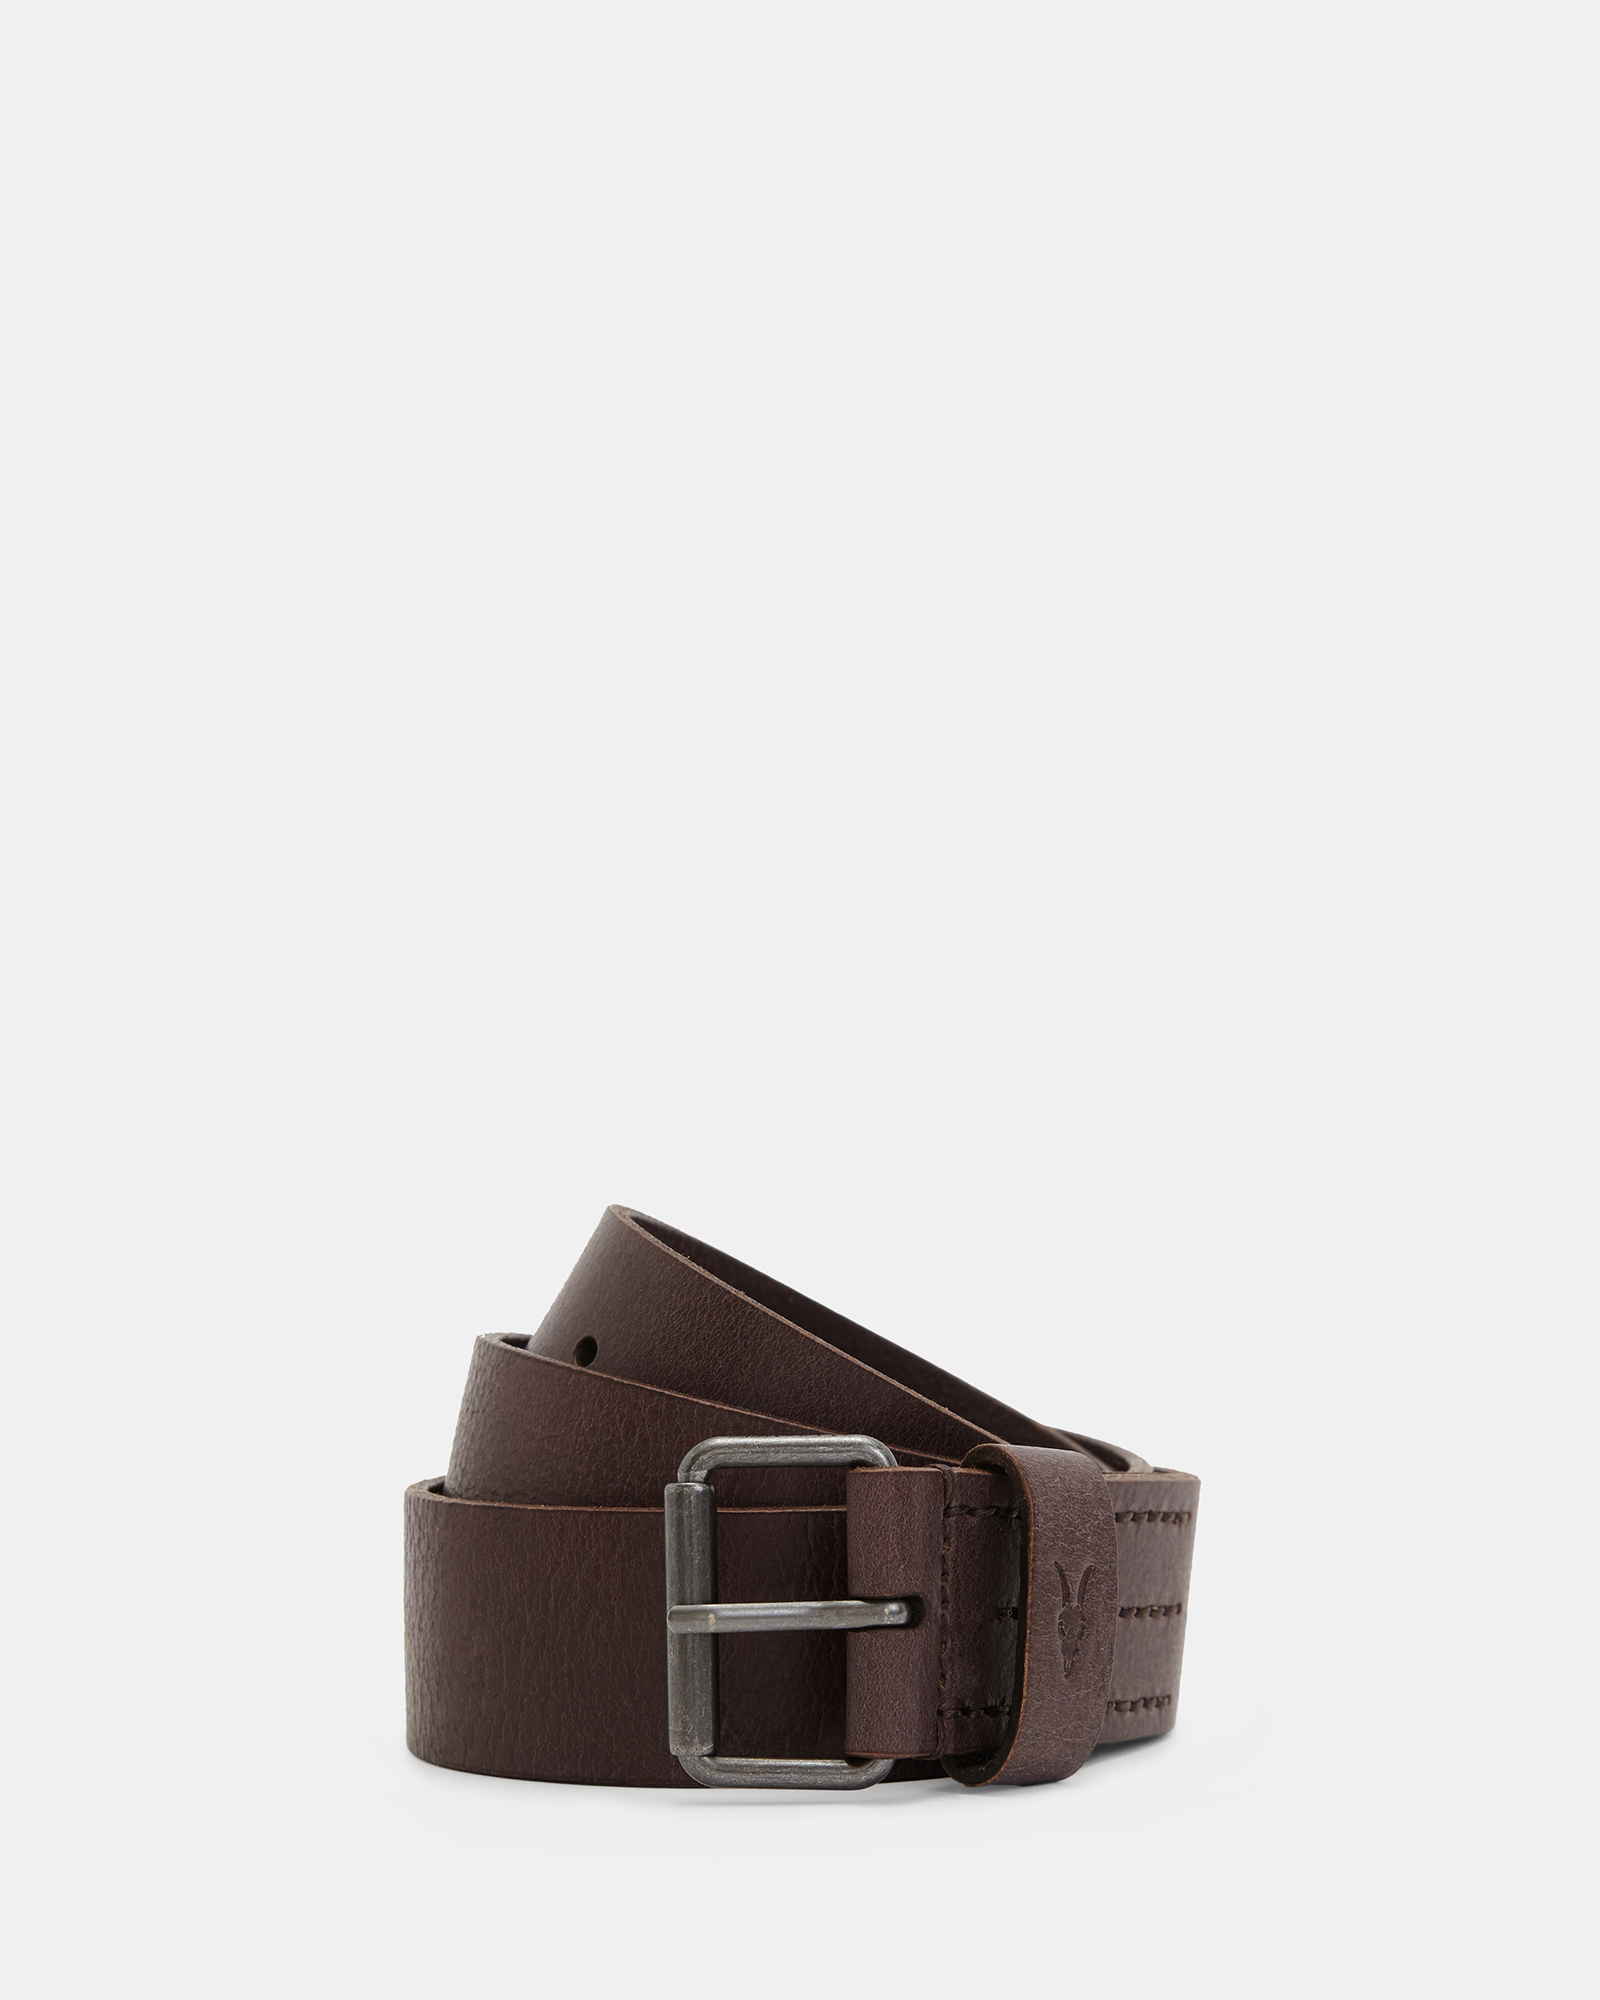 AllSaints Dunston Leather Embossed Belt,, Brown, Size: